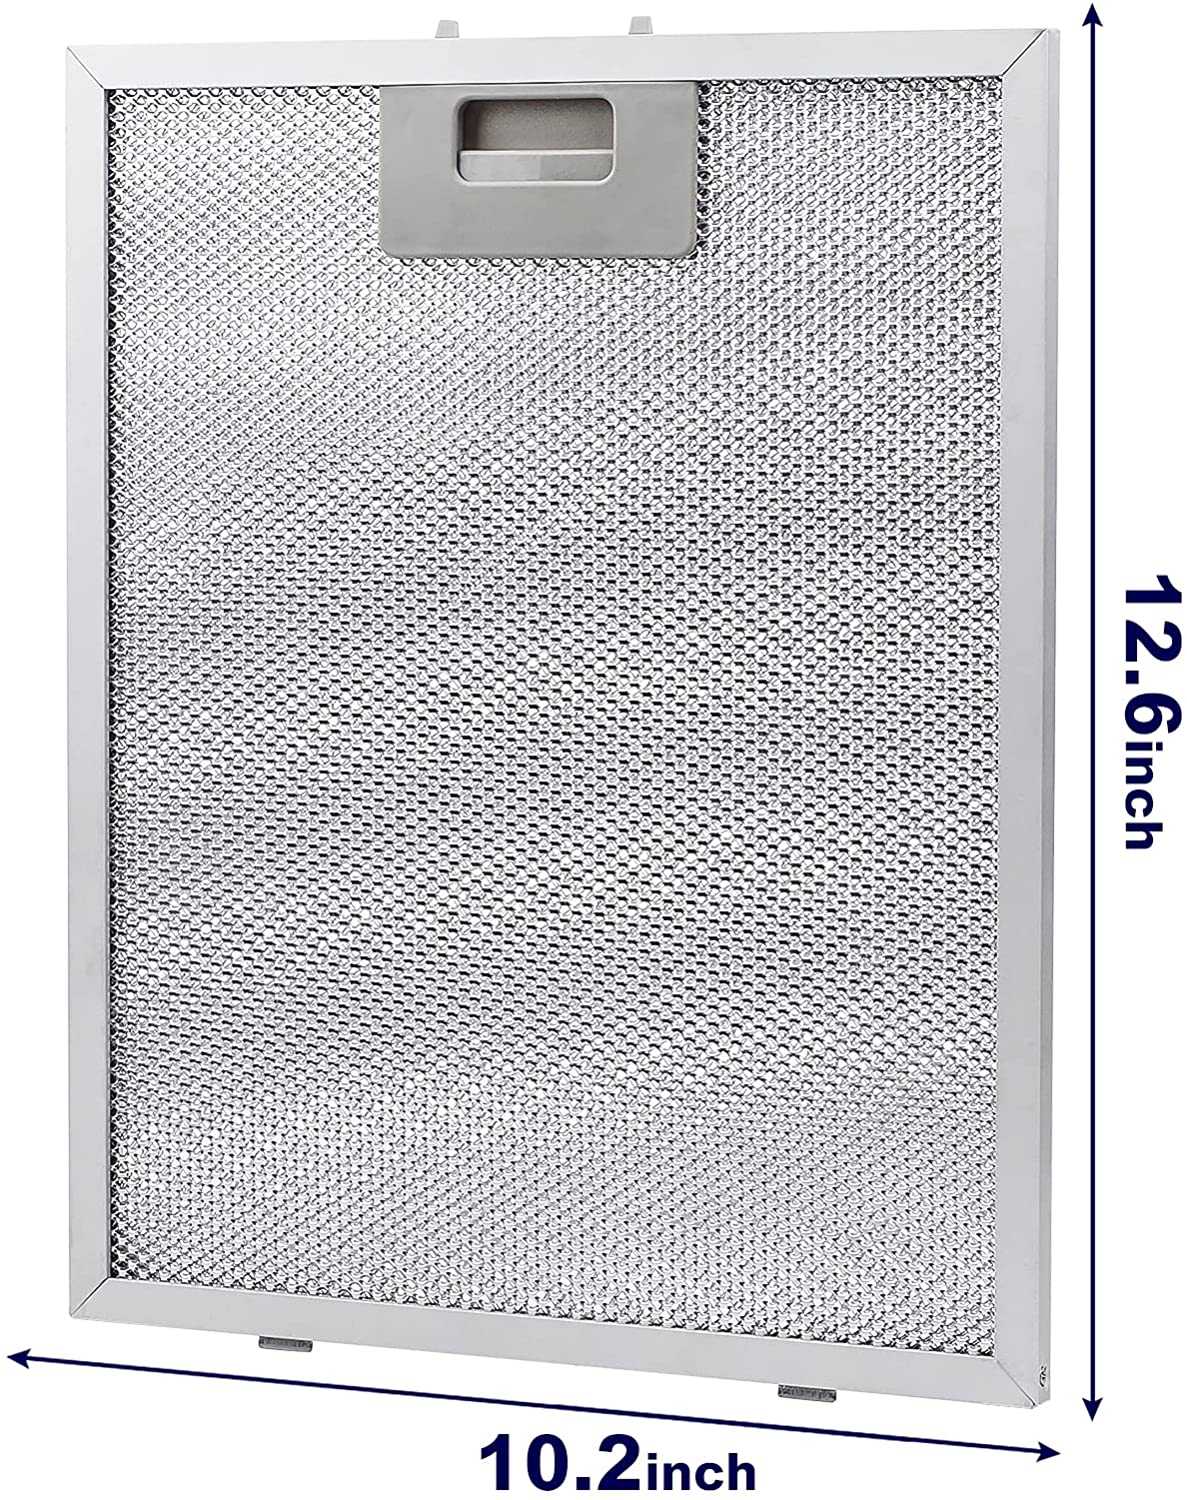 2 упаковки, 12,6x10,2 дюйма, фильтр для вытяжки, металлический фильтр для смазки, подходит для многих марок вытяжек 26x32, экстрактор